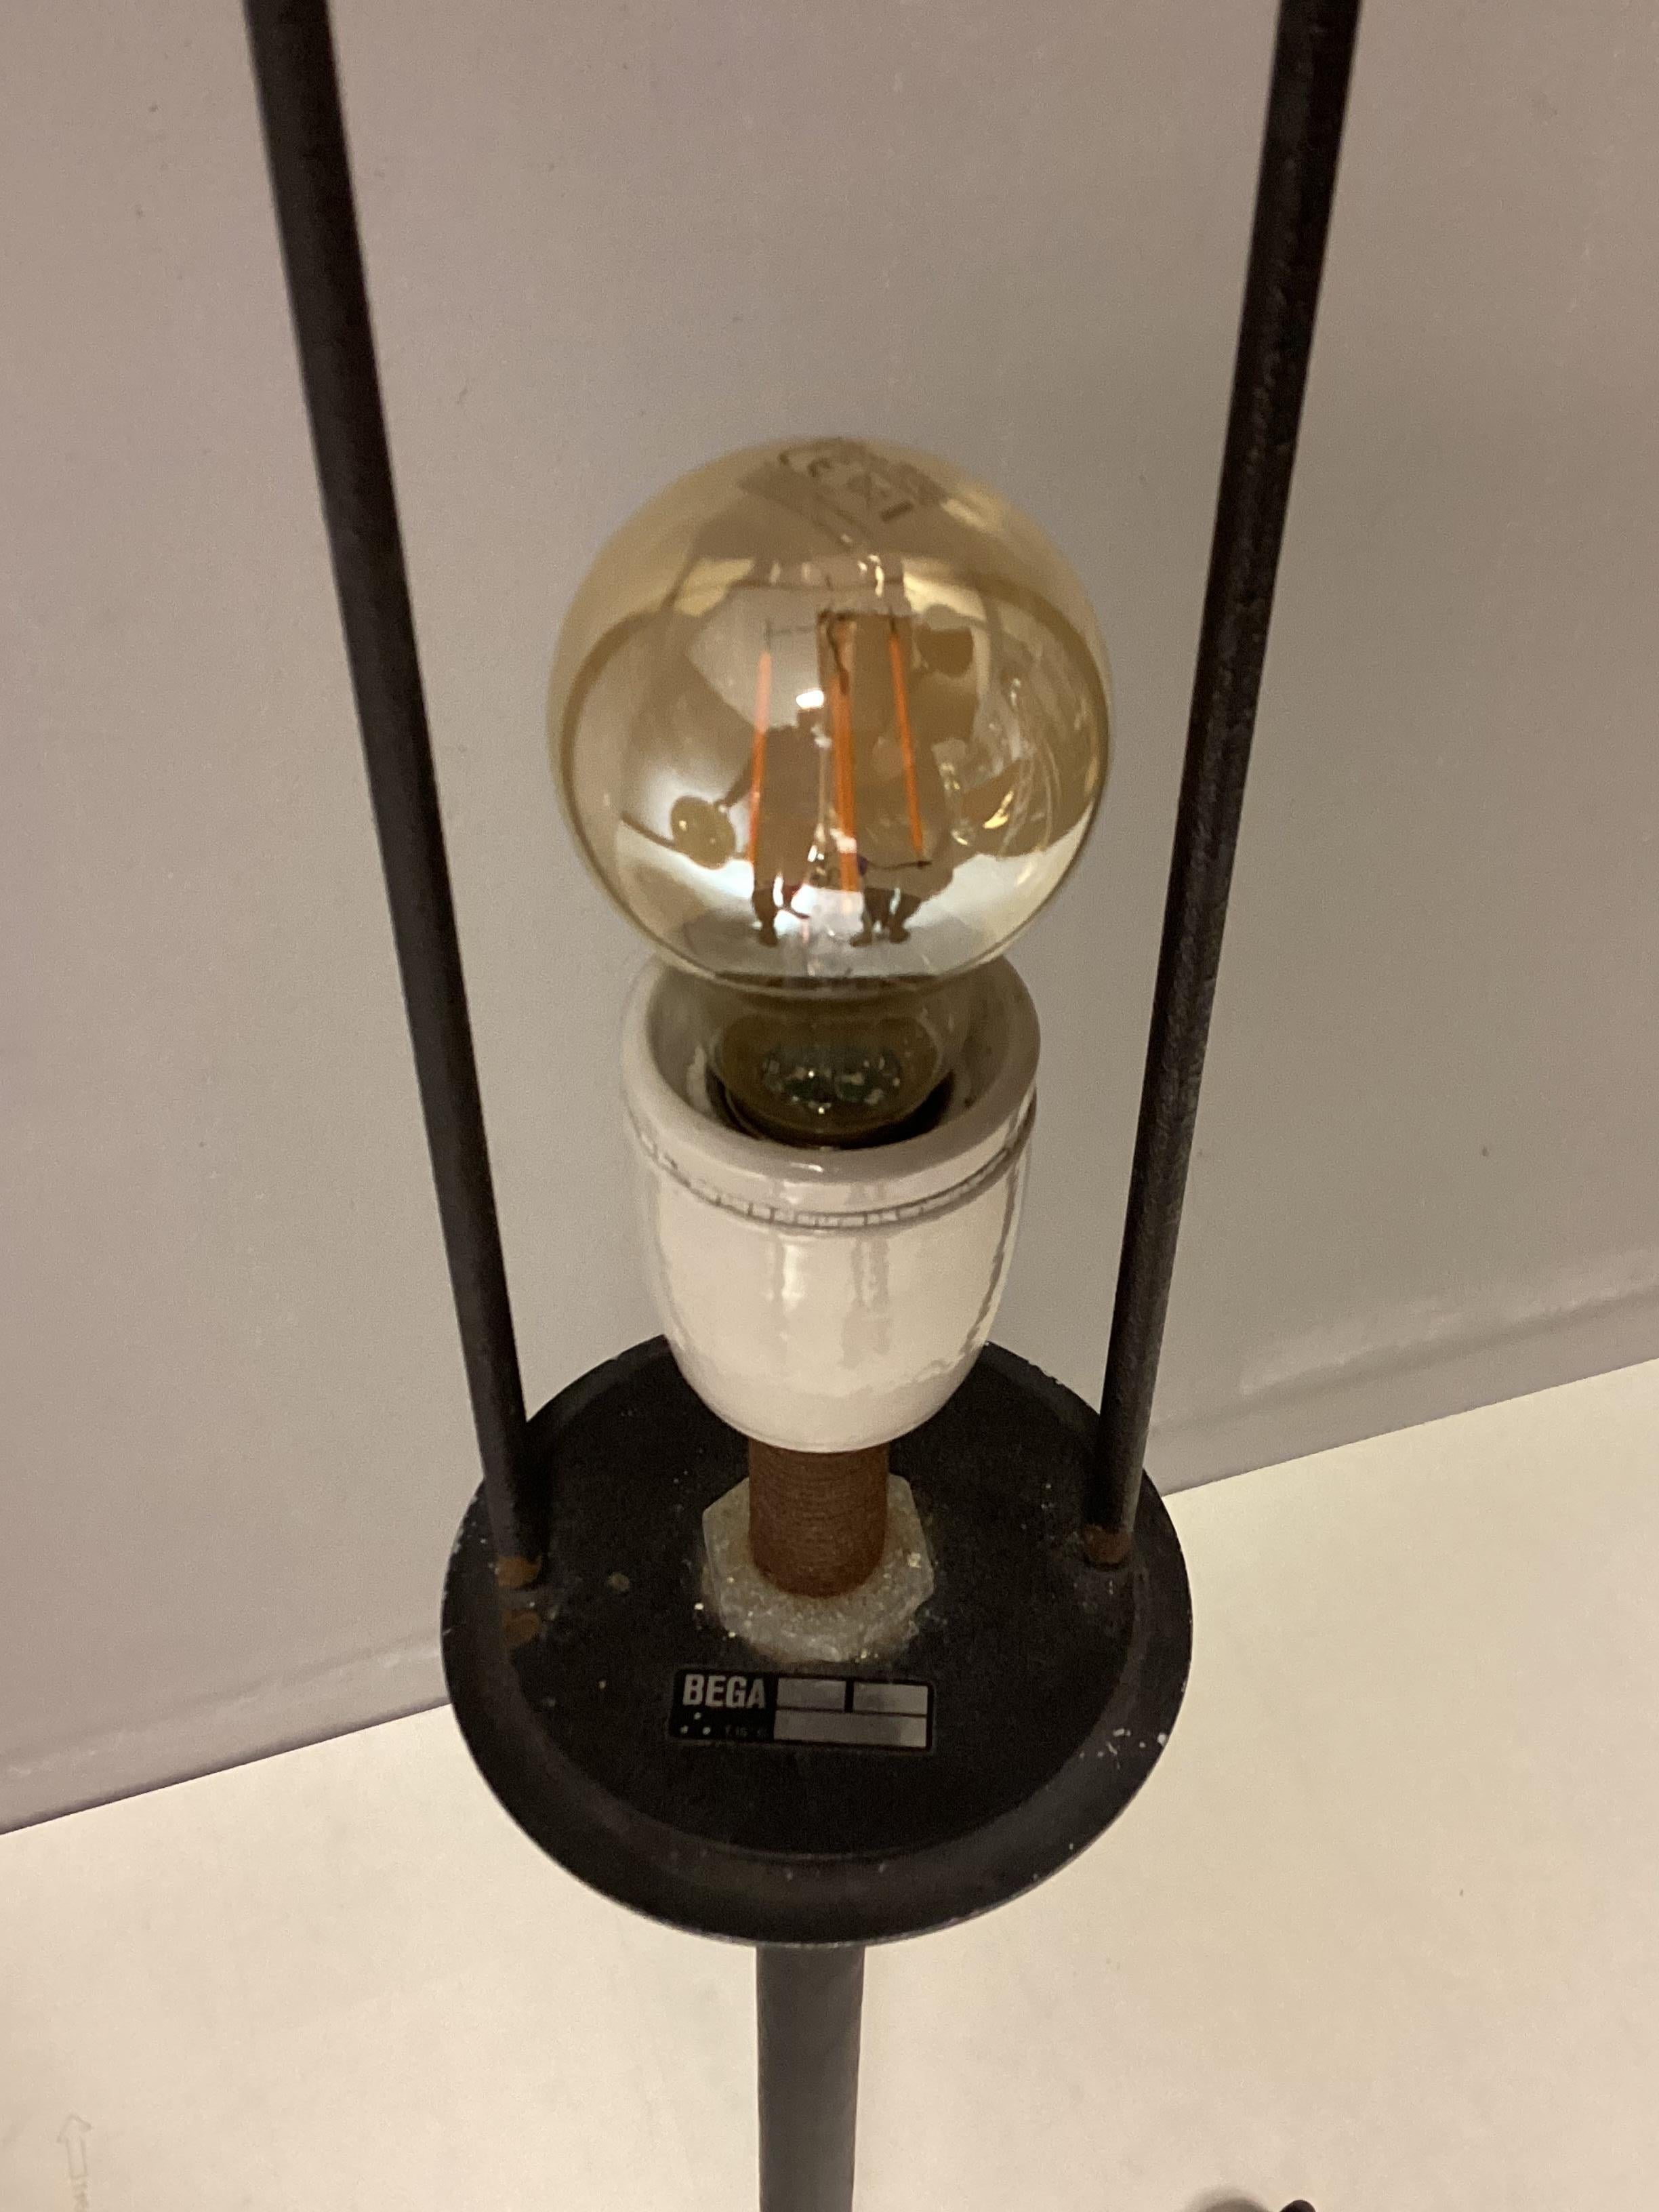 Bei dieser Lampe handelt es sich um eine seltene Dreibein-Stehleuchte des renommierten Herstellers BEGA aus der Mitte des Jahrhunderts. Das besondere, schlichte Design sieht aus wie ein Vollmond, besonders wenn die Lampe eingeschaltet ist. Sie